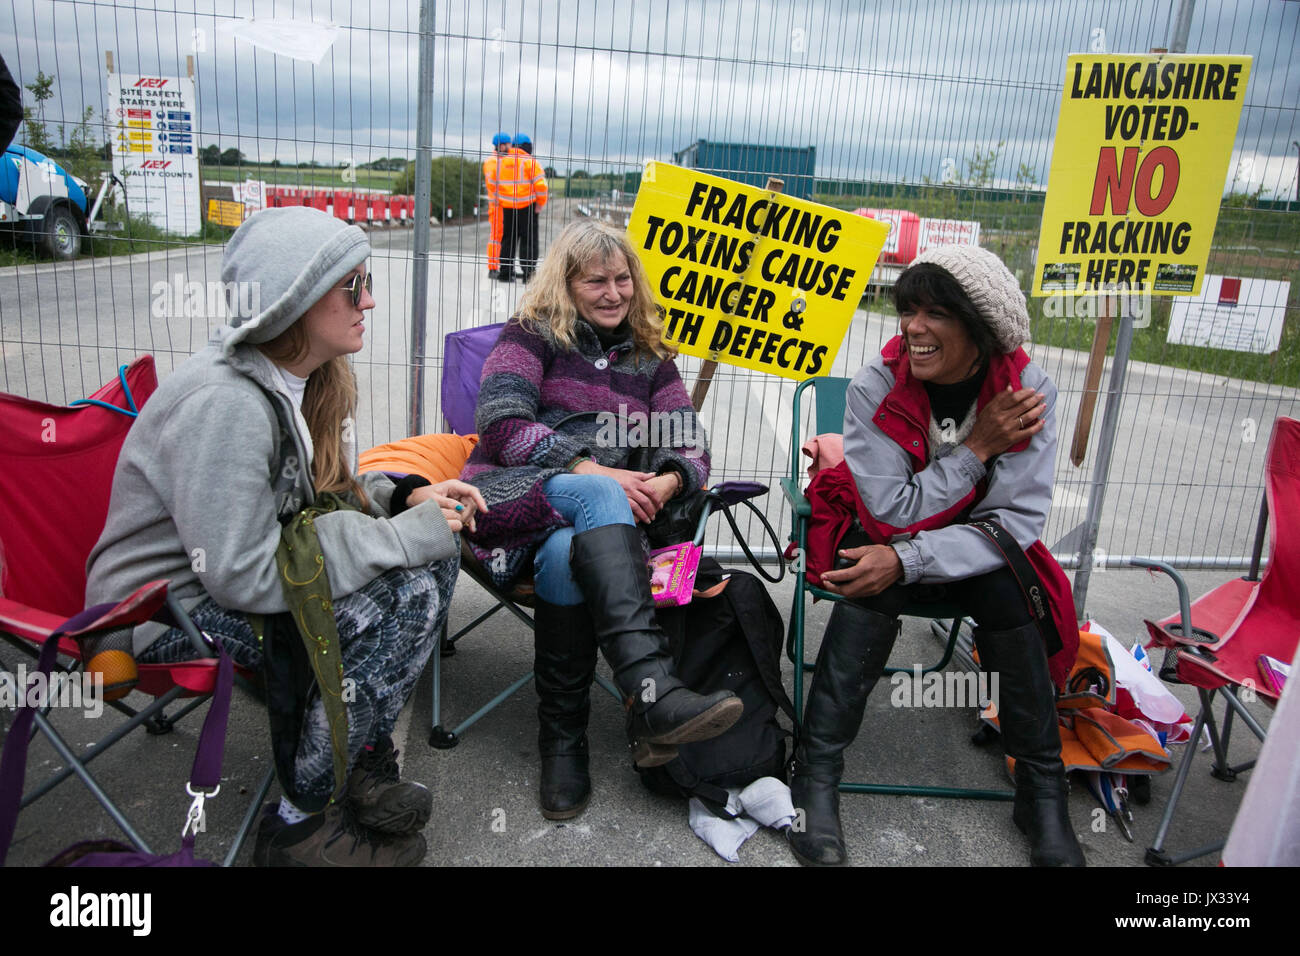 Les militants anti-fracturation et manifestants devant les portes de la Quadrilla site fracturation 31 juin, Lancashire, Royaume-Uni. La lutte contre la fra Banque D'Images